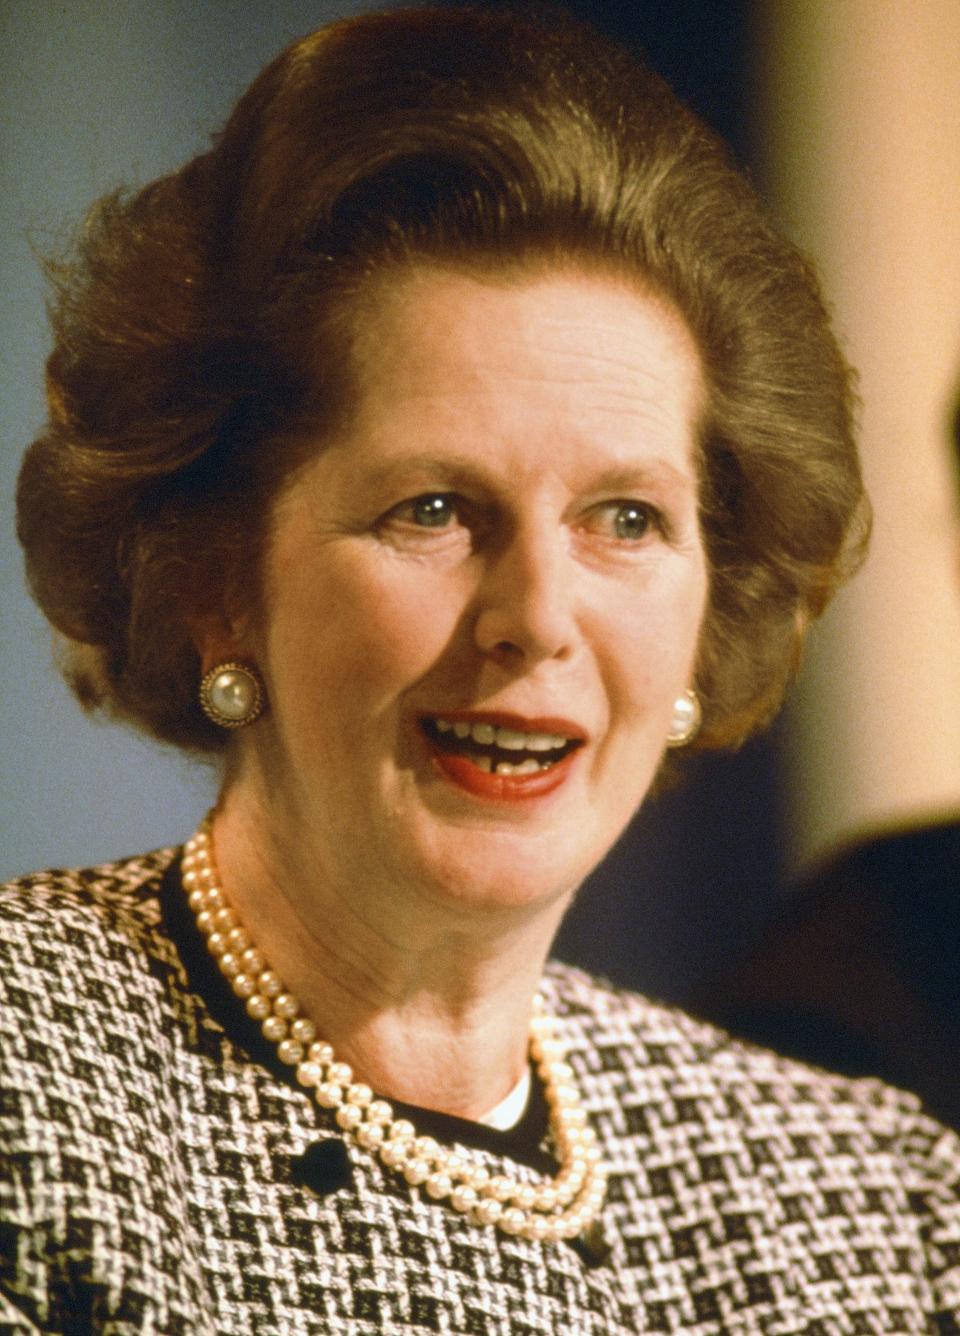 Margaret Thatcher pearls -  Sean Smith/Mirrorpix/Getty Images